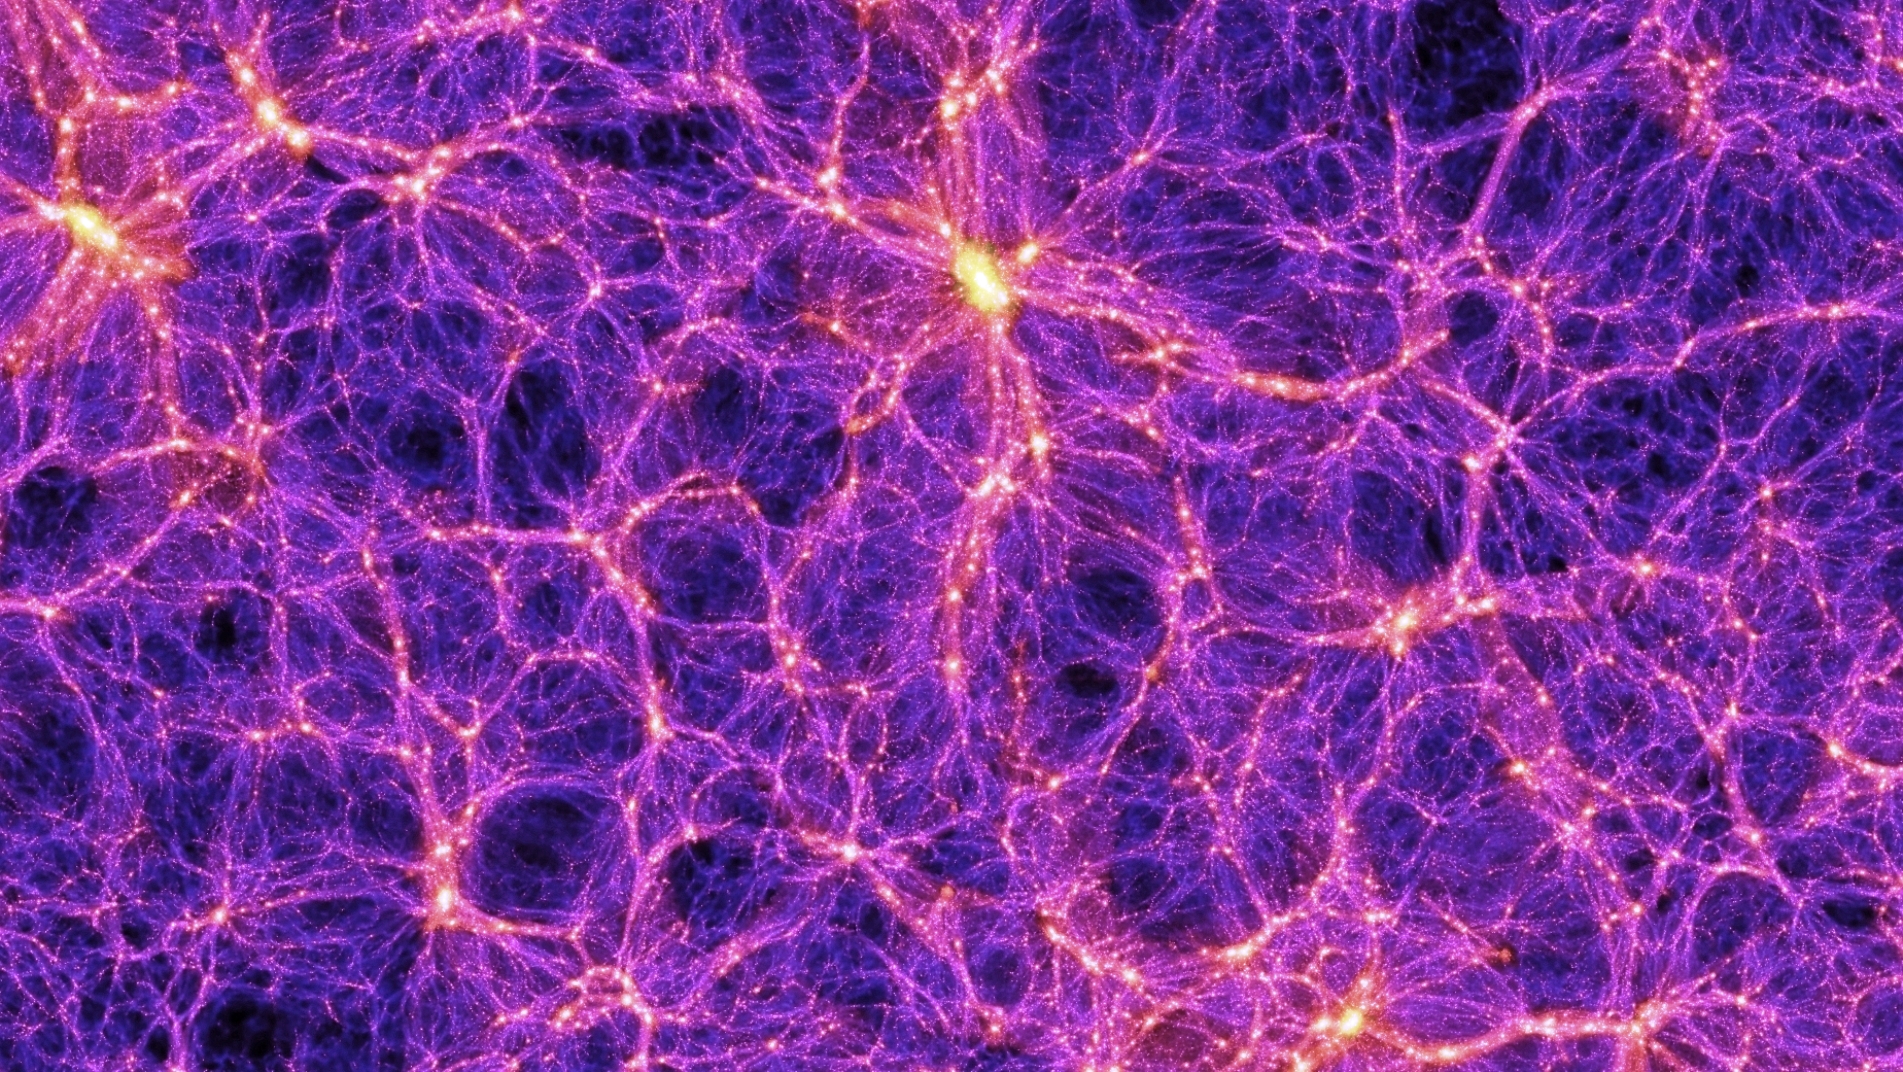 Les simulations numériques de la formation des grandes structures de l’Univers permettraient de comprendre comment la matière noire pourrait avoir donné les premiers trous noirs supermassifs. Ici, une image extraite d'une de ces simulations réalisées avec des superordinateurs dans le cadre du Millennium Simulation Project – dont l'objectif est d'en savoir plus sur la manière dont les galaxies et les amas de galaxies se forment et se rassemblent pour créer, à grande échelle, des structures en forme de filaments. L'image est suffisamment précise pour comprendre bien des aspects de l'univers observable en utilisant la théorie de Newton de la gravitation. © Max Planck Institute for Astrophysics, Springel et al.